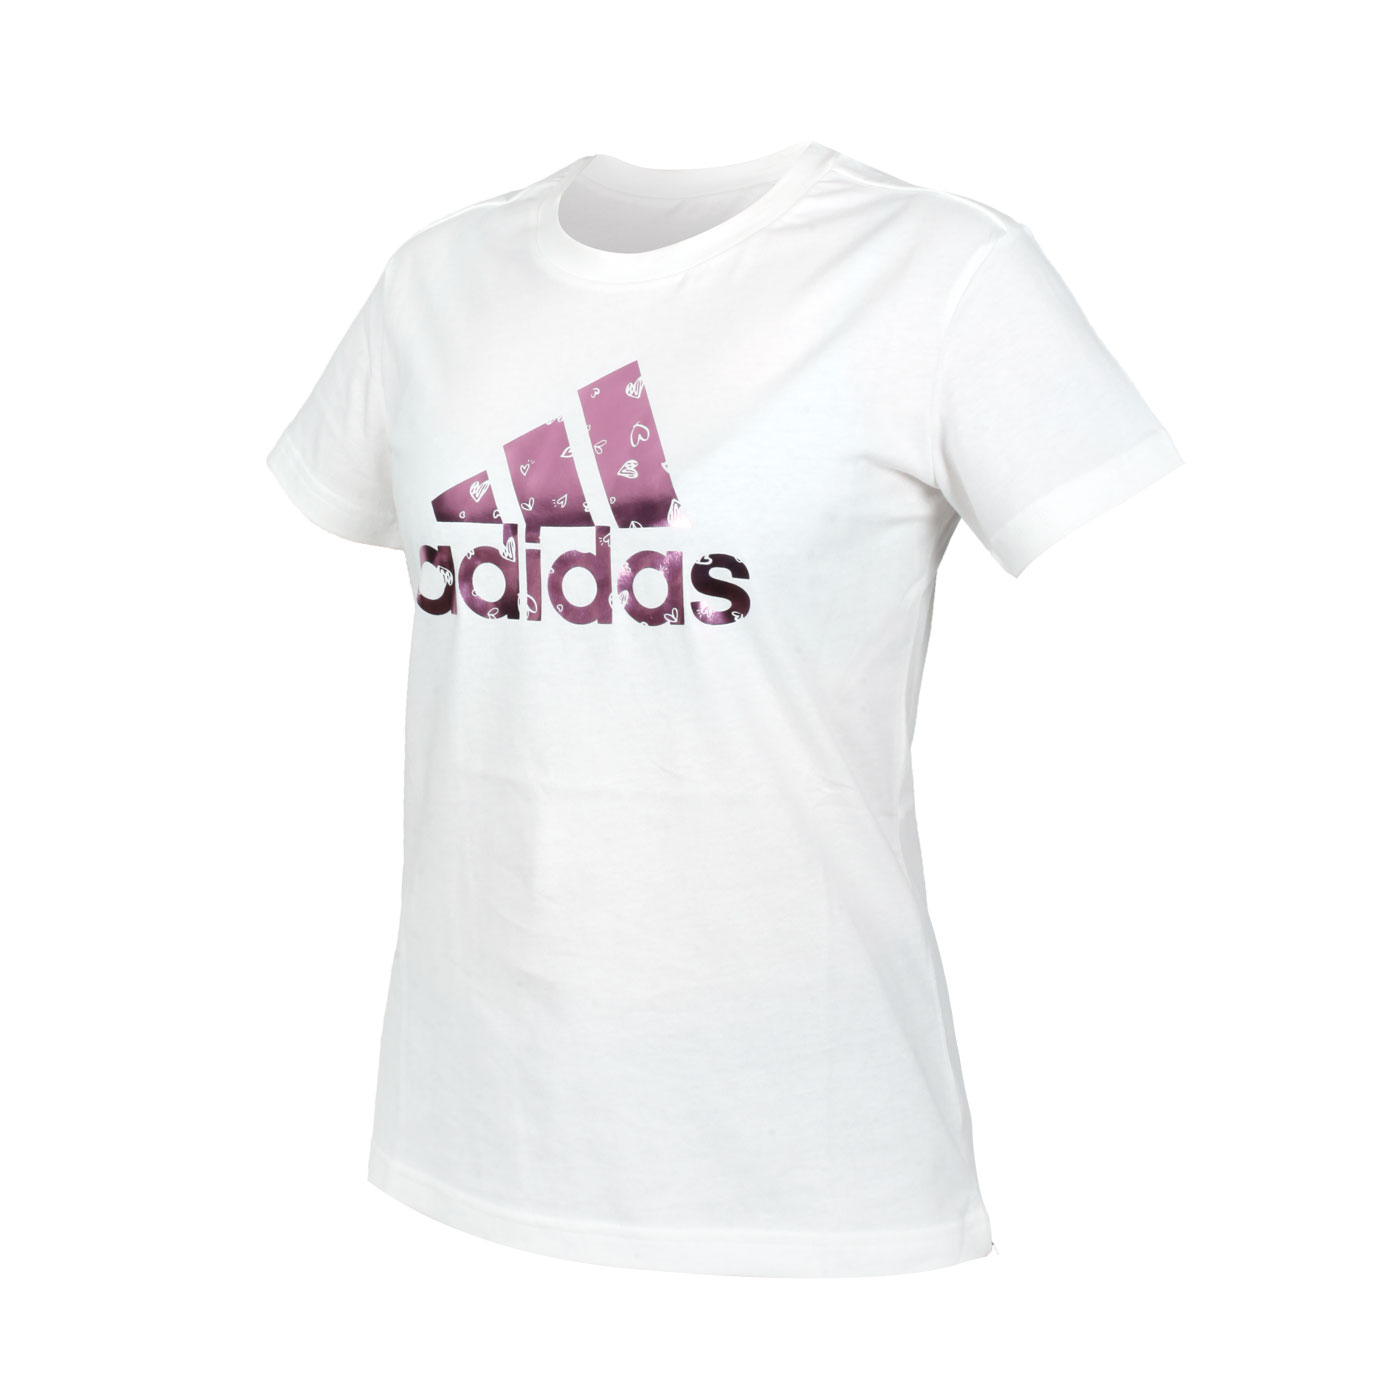 ADIDAS 女款短袖T恤 HB7128 - 白粉紅